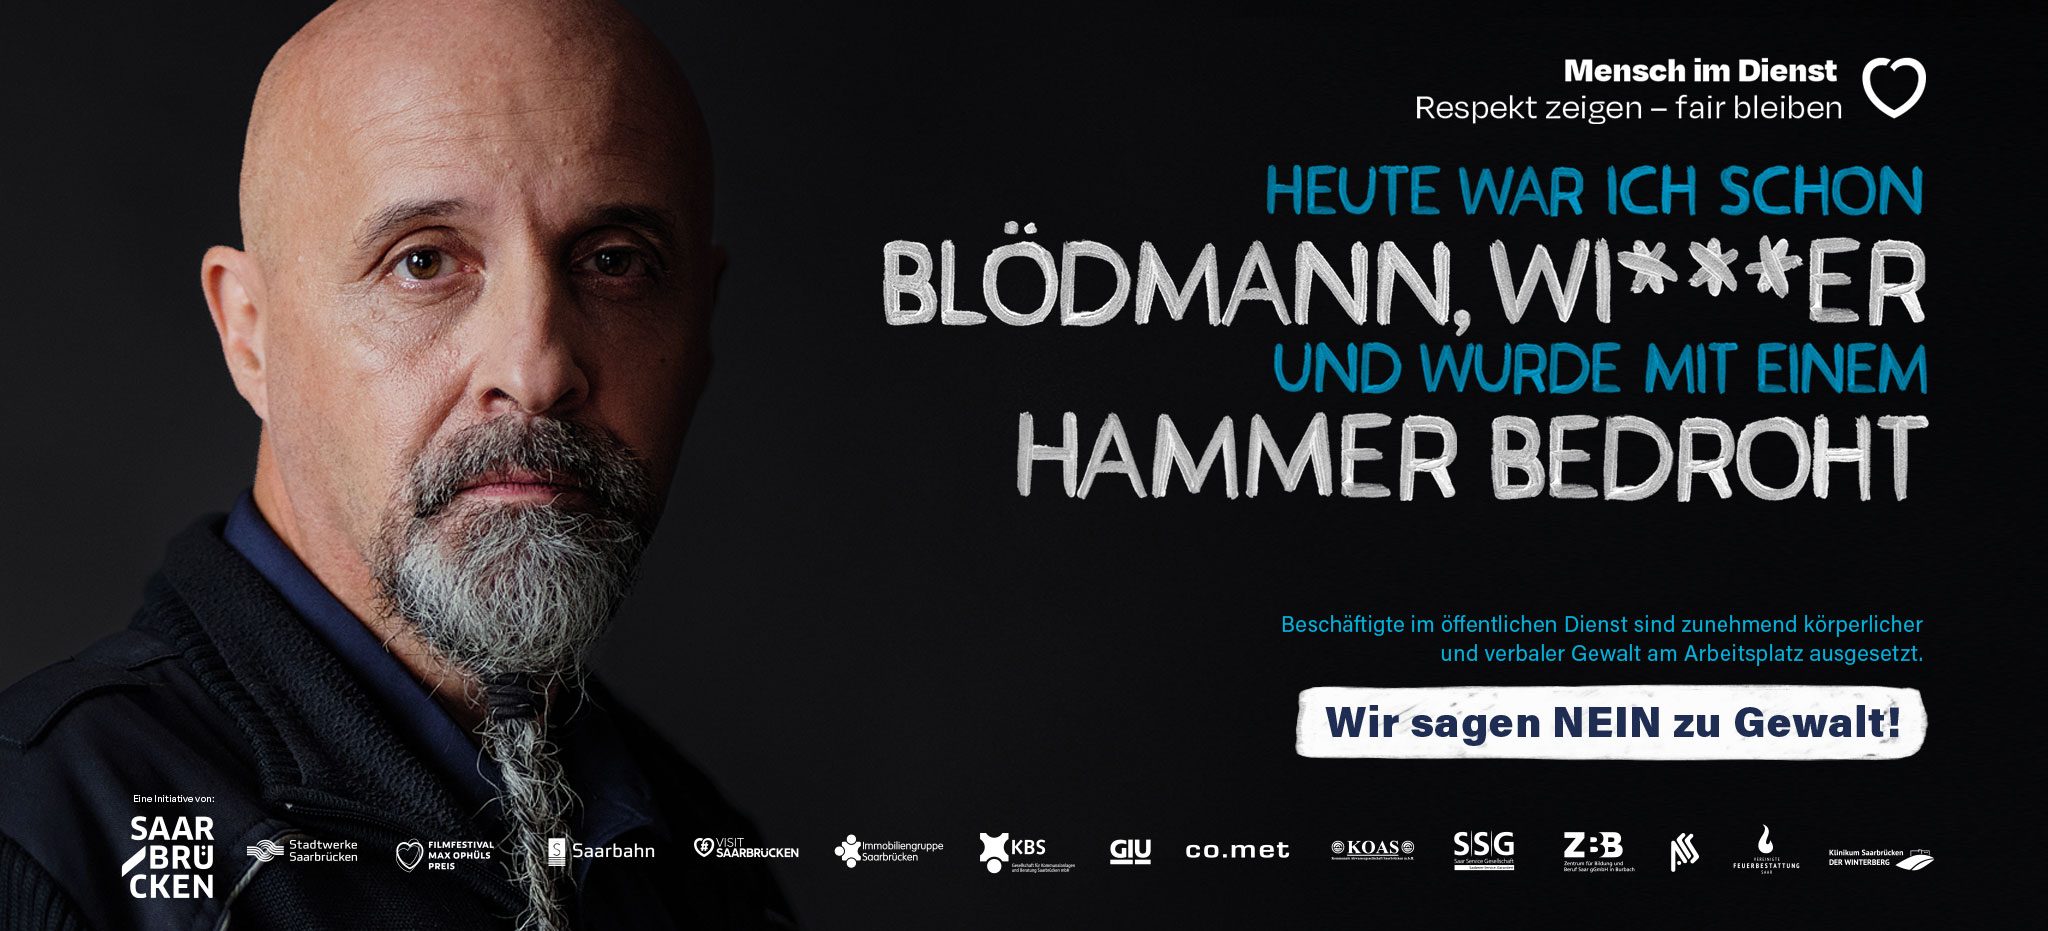 Mensch im Dienst Kampagne Saarbrücken - Werbeagentur Saarland Jungen & Thönes